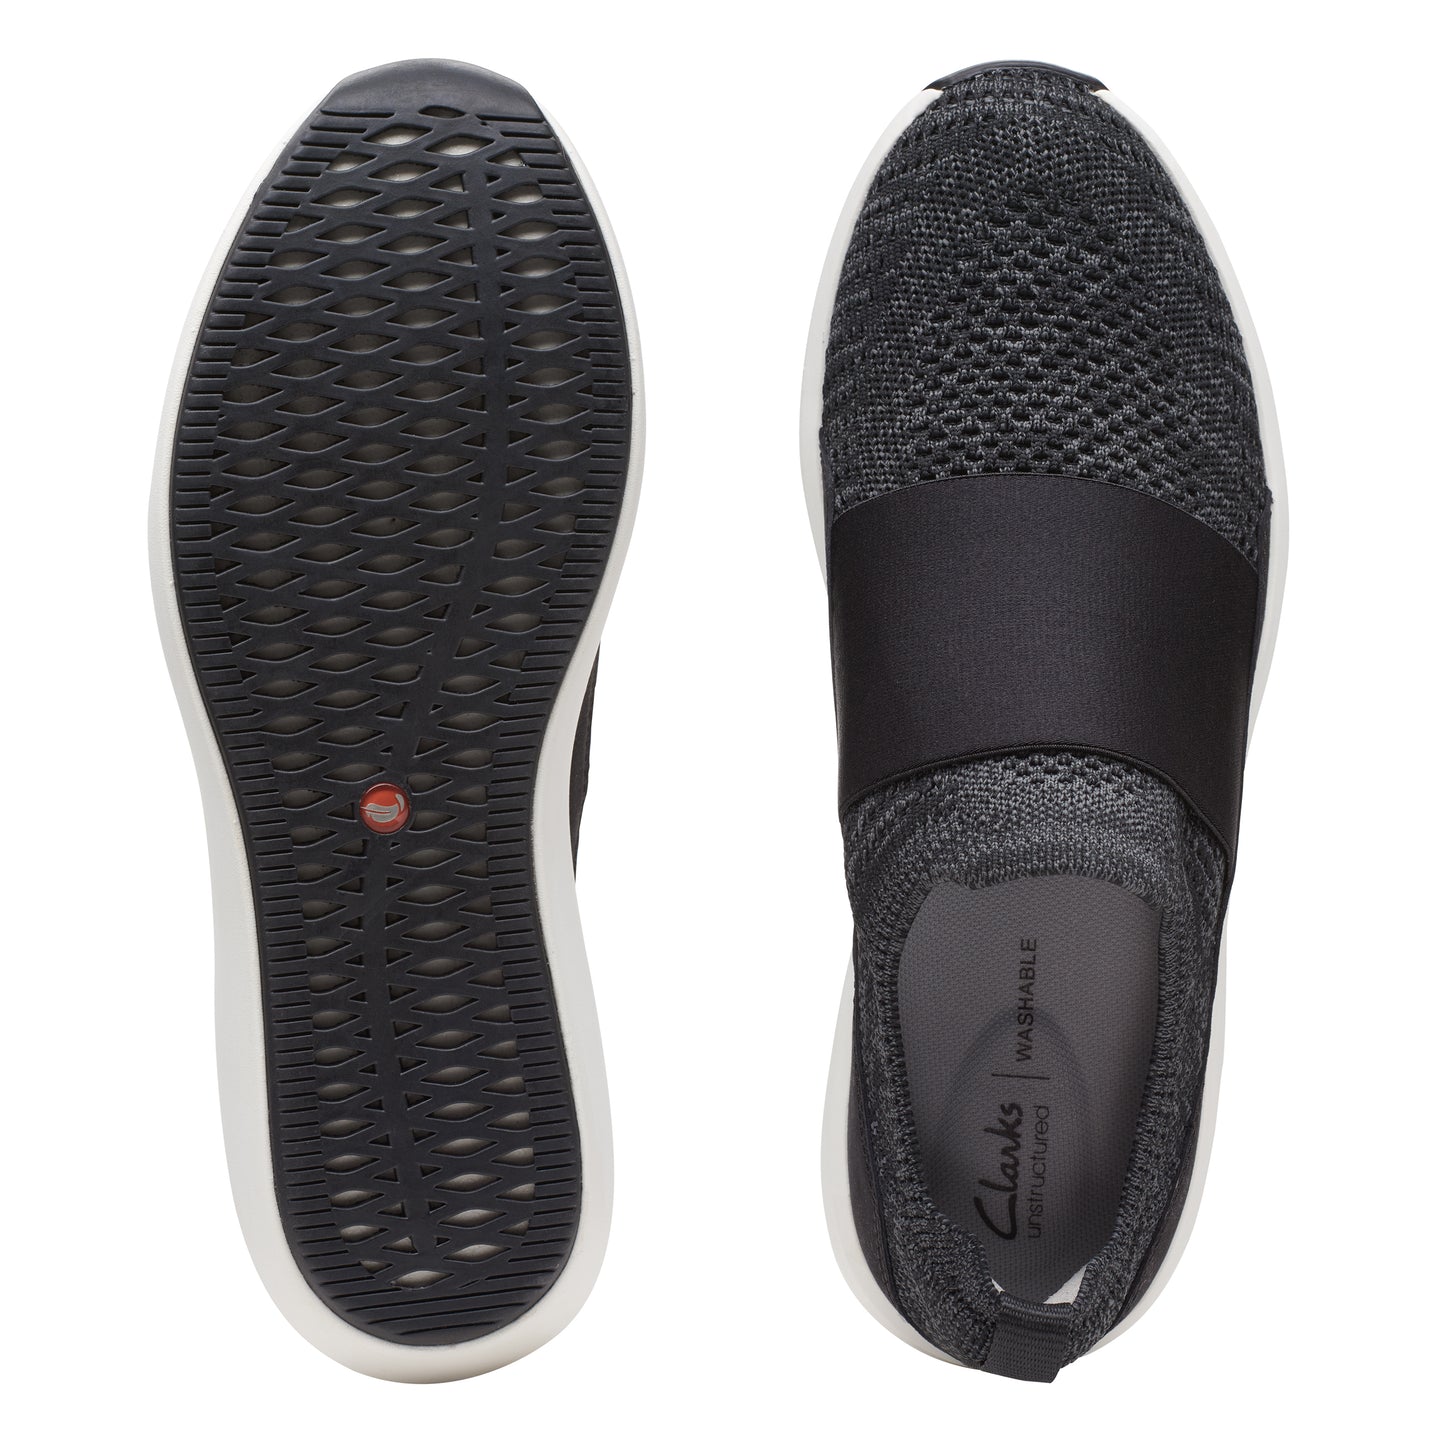 Zapatos Sin Cordones On Shoes De La Marca Clarks Para Hombre Modelo Un Rio Knit Black Knit En Color Negro